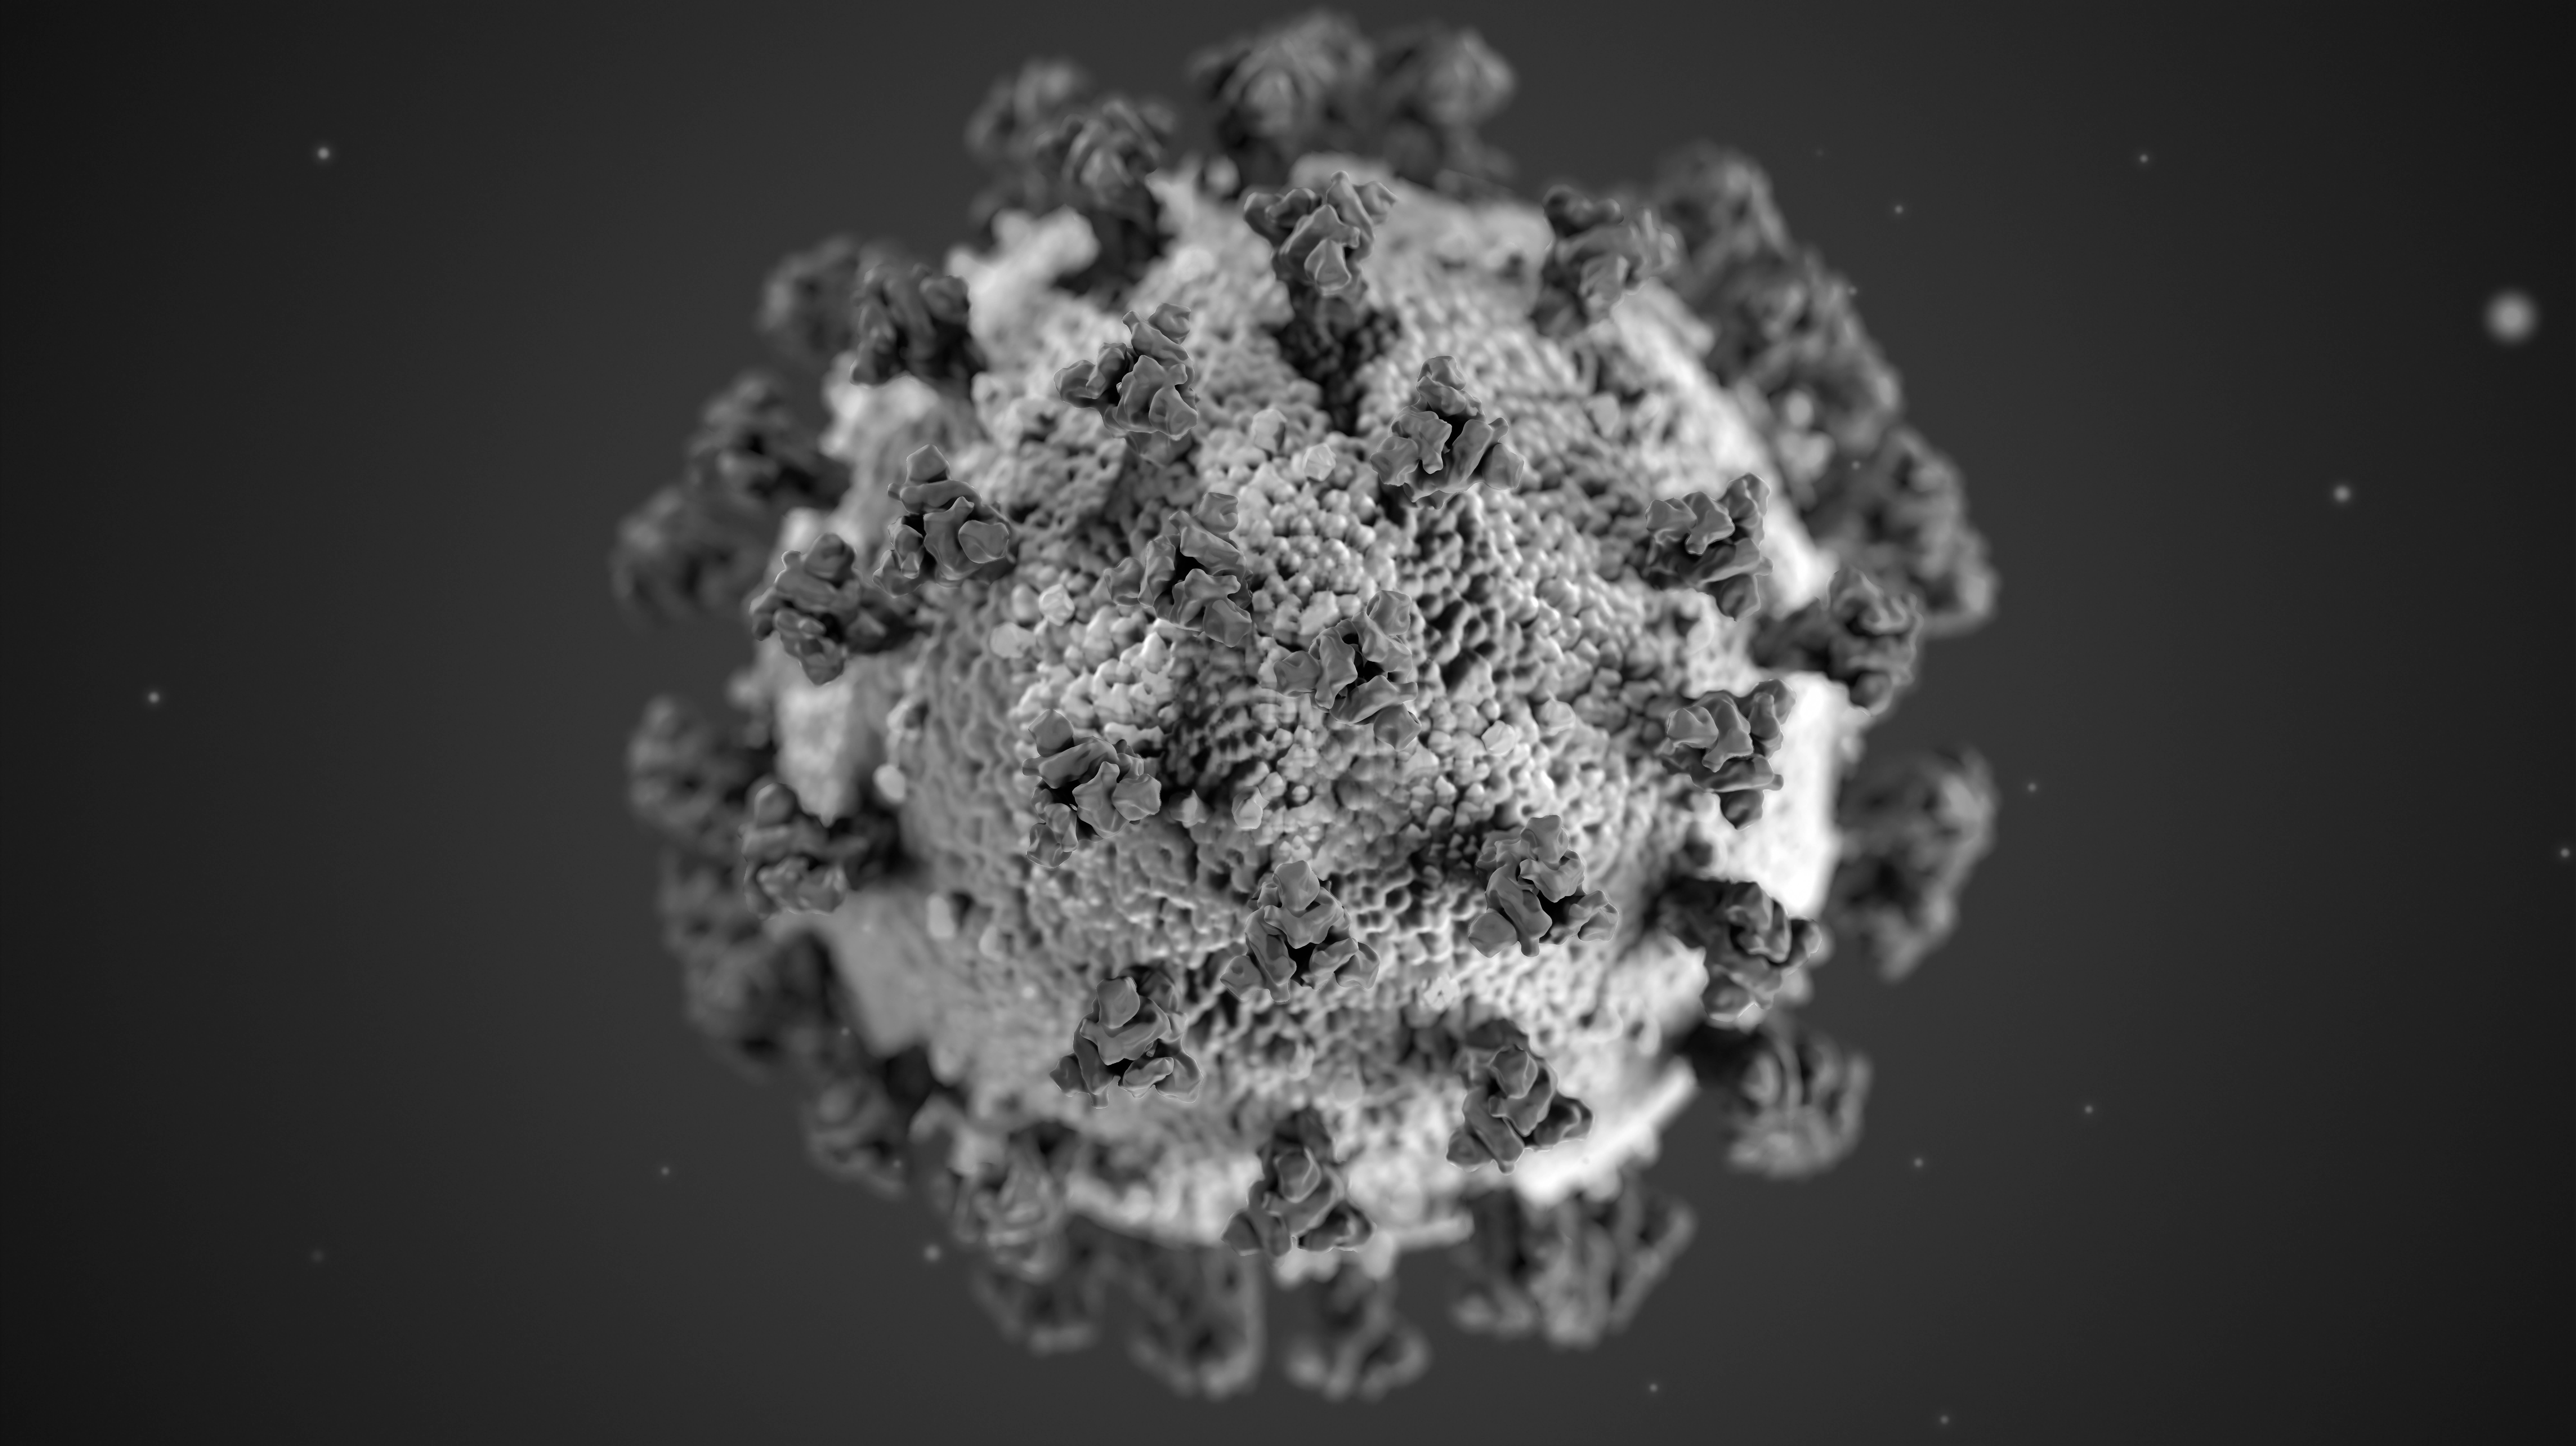 Mickroskopbillede af COVID-19 virus